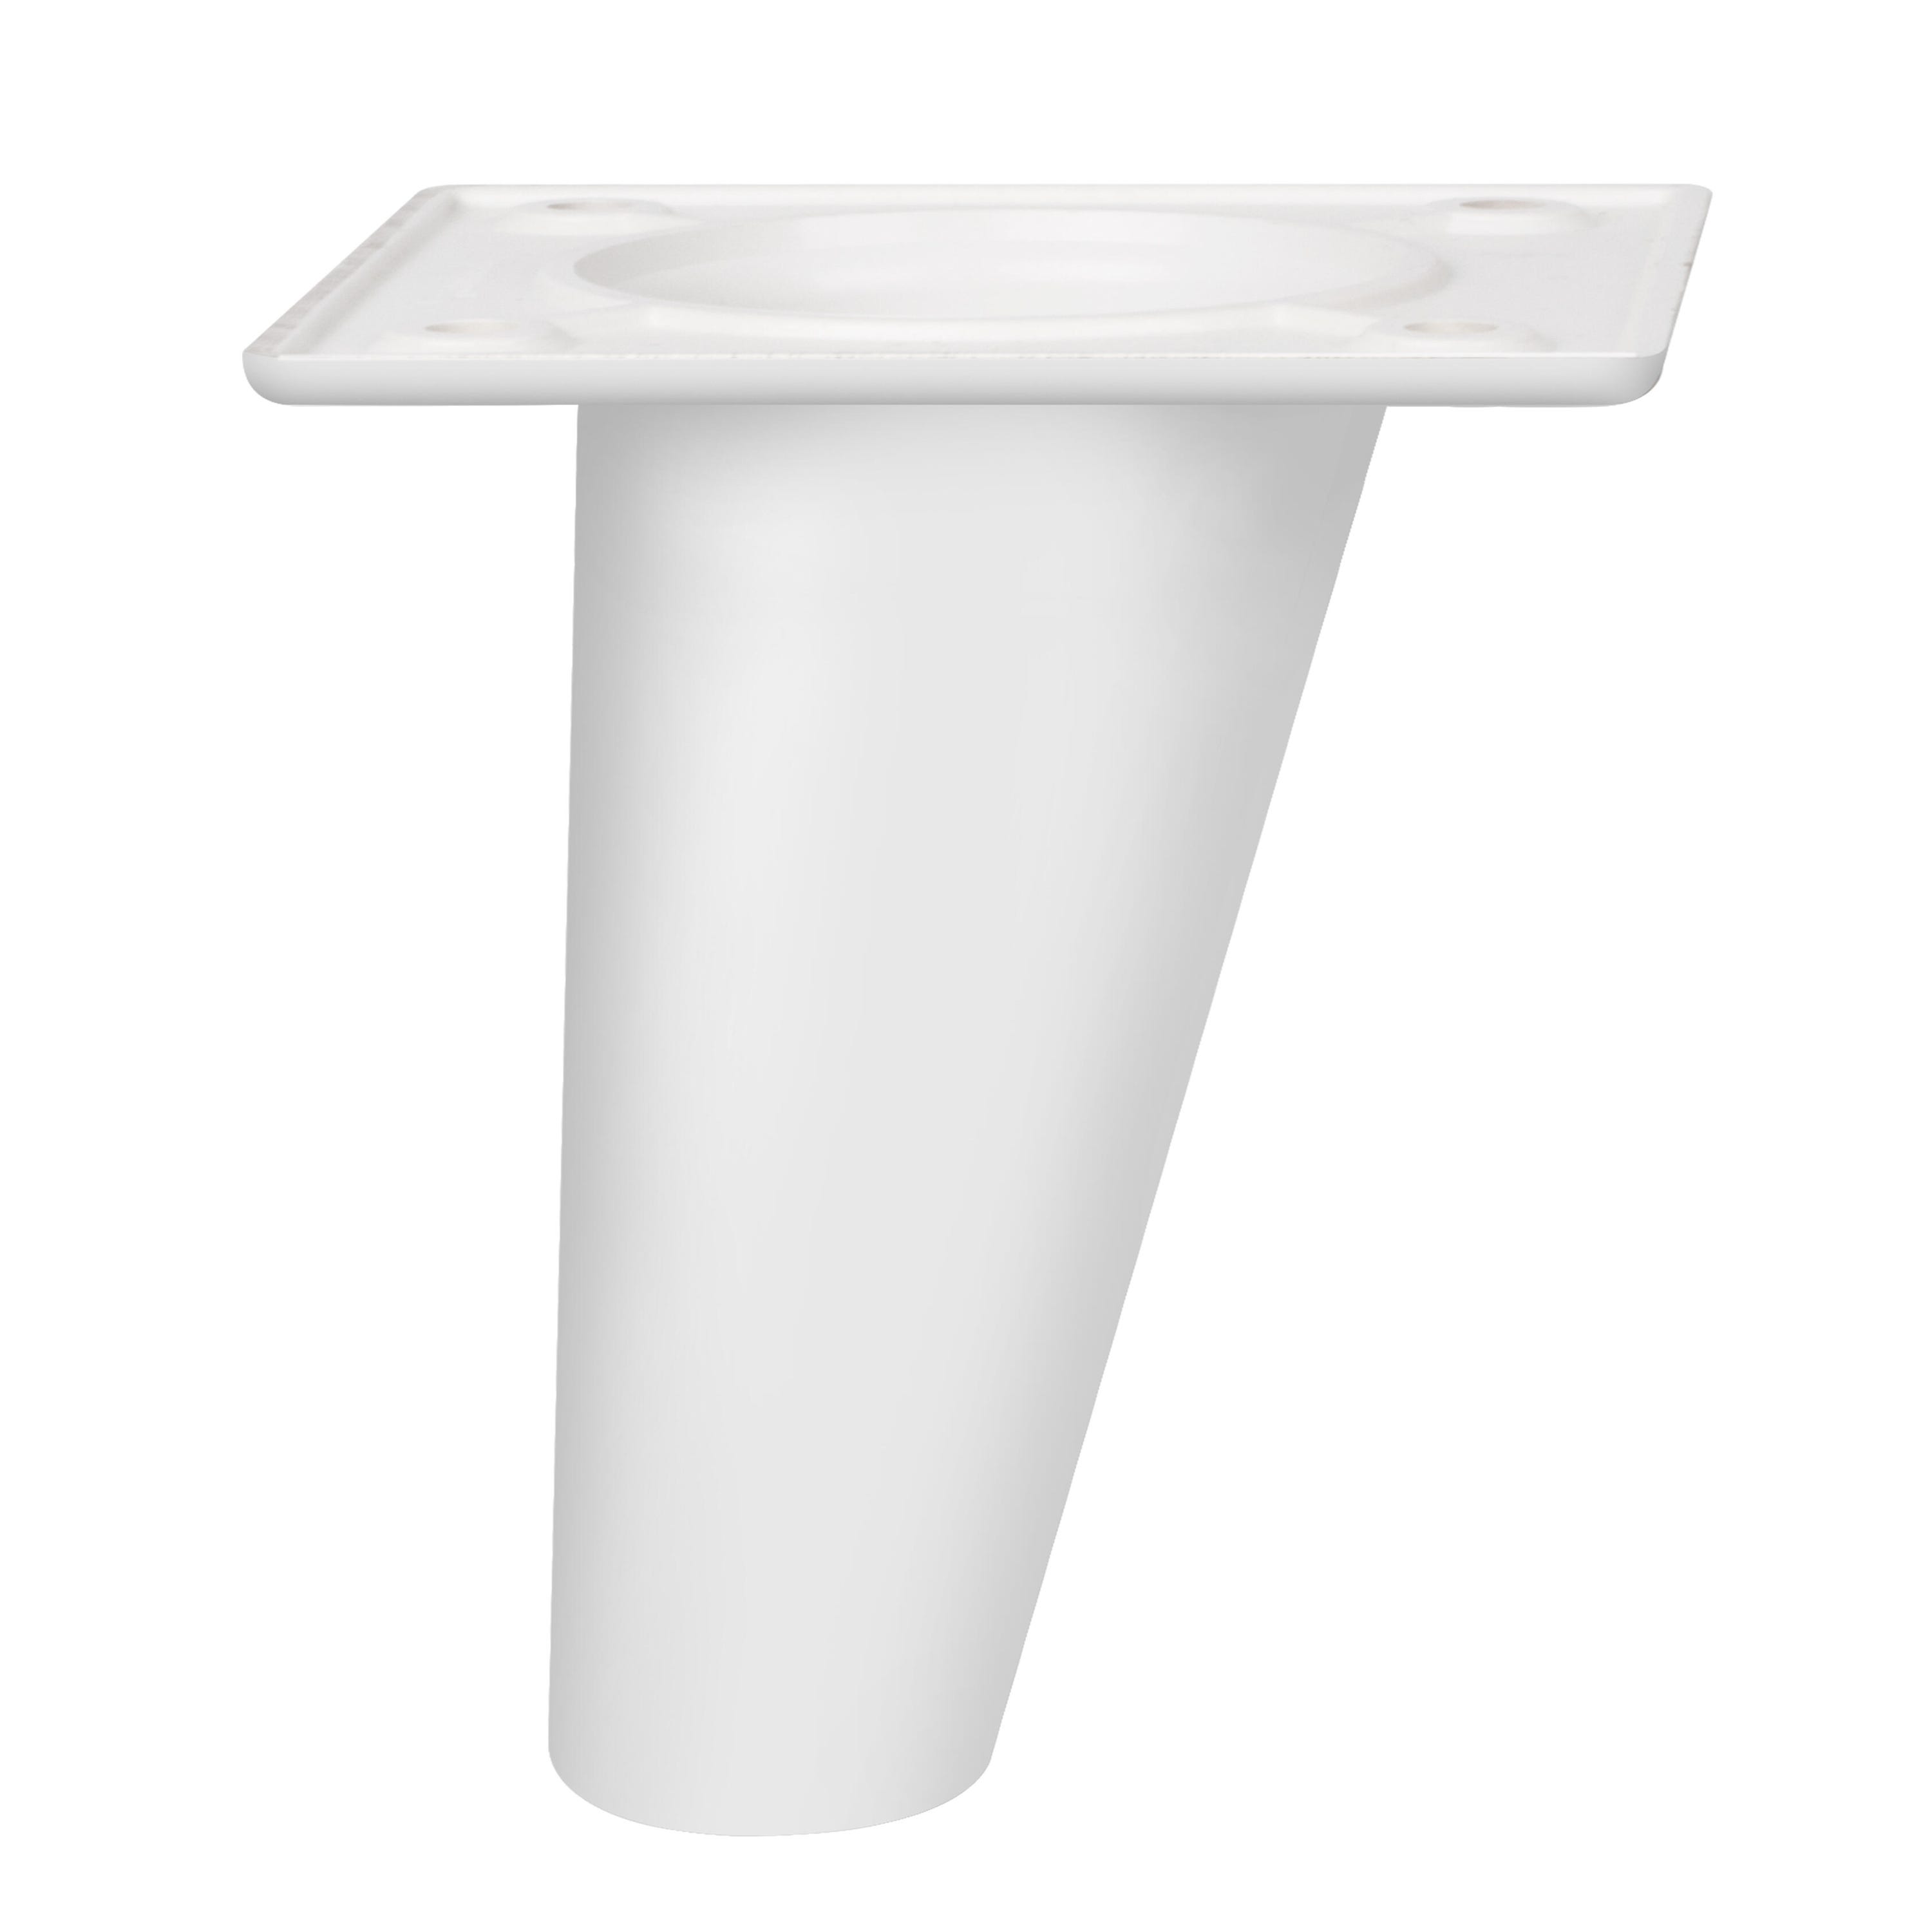 Pata fija de plástico para mueble 8 cm color blanco